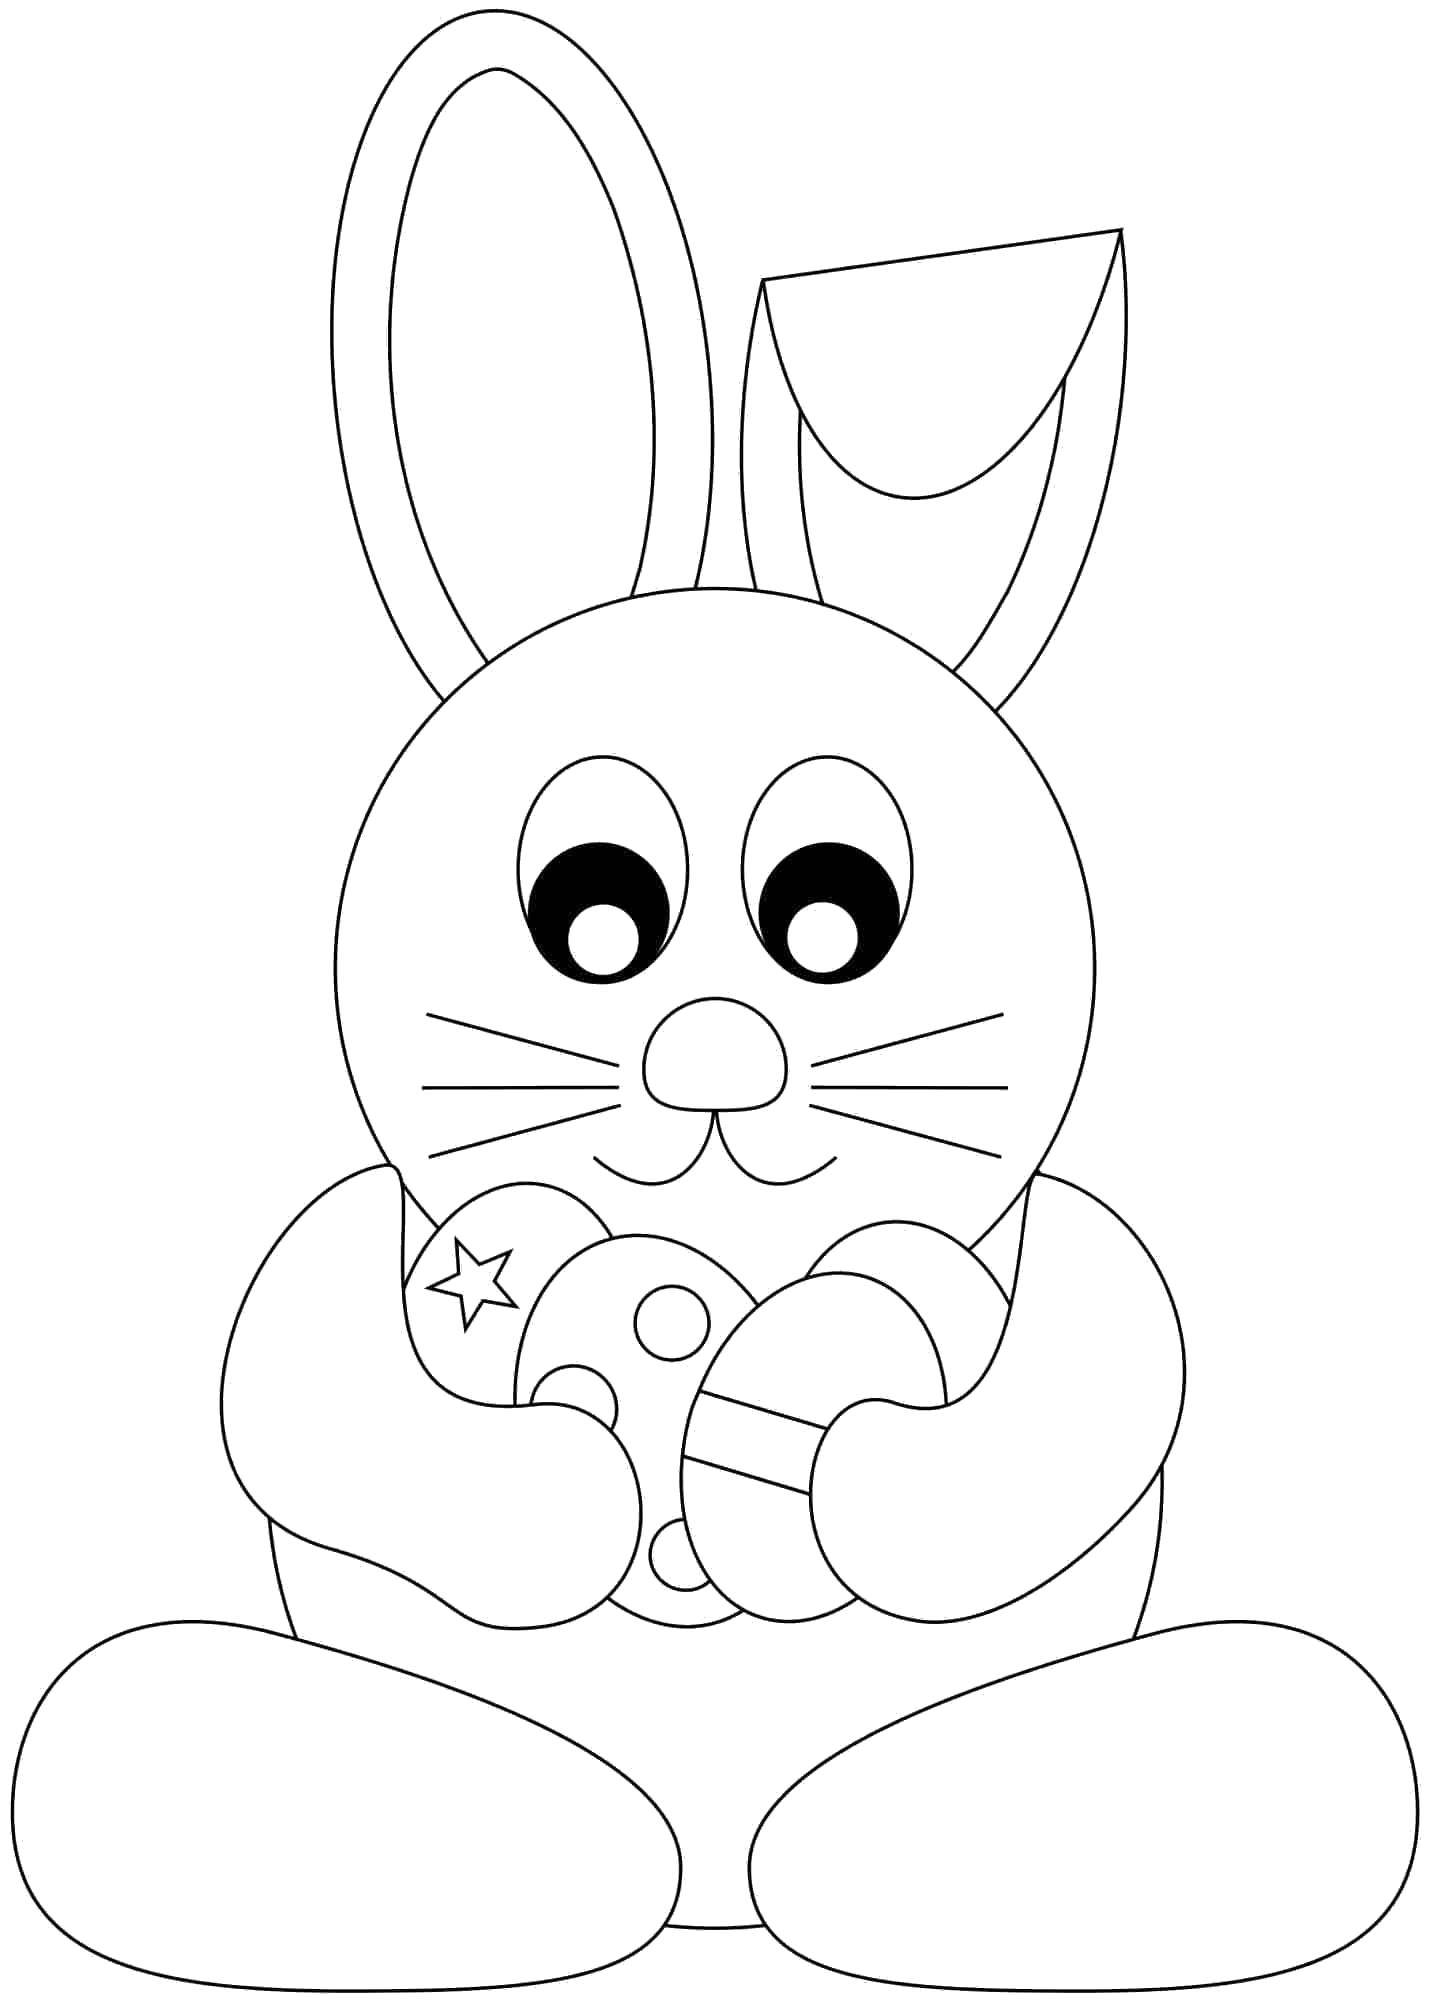 Опис: розмальовки  Великодній кролик. Категорія: кролик. Теги:  Паска, яйця, візерунки, кролик.